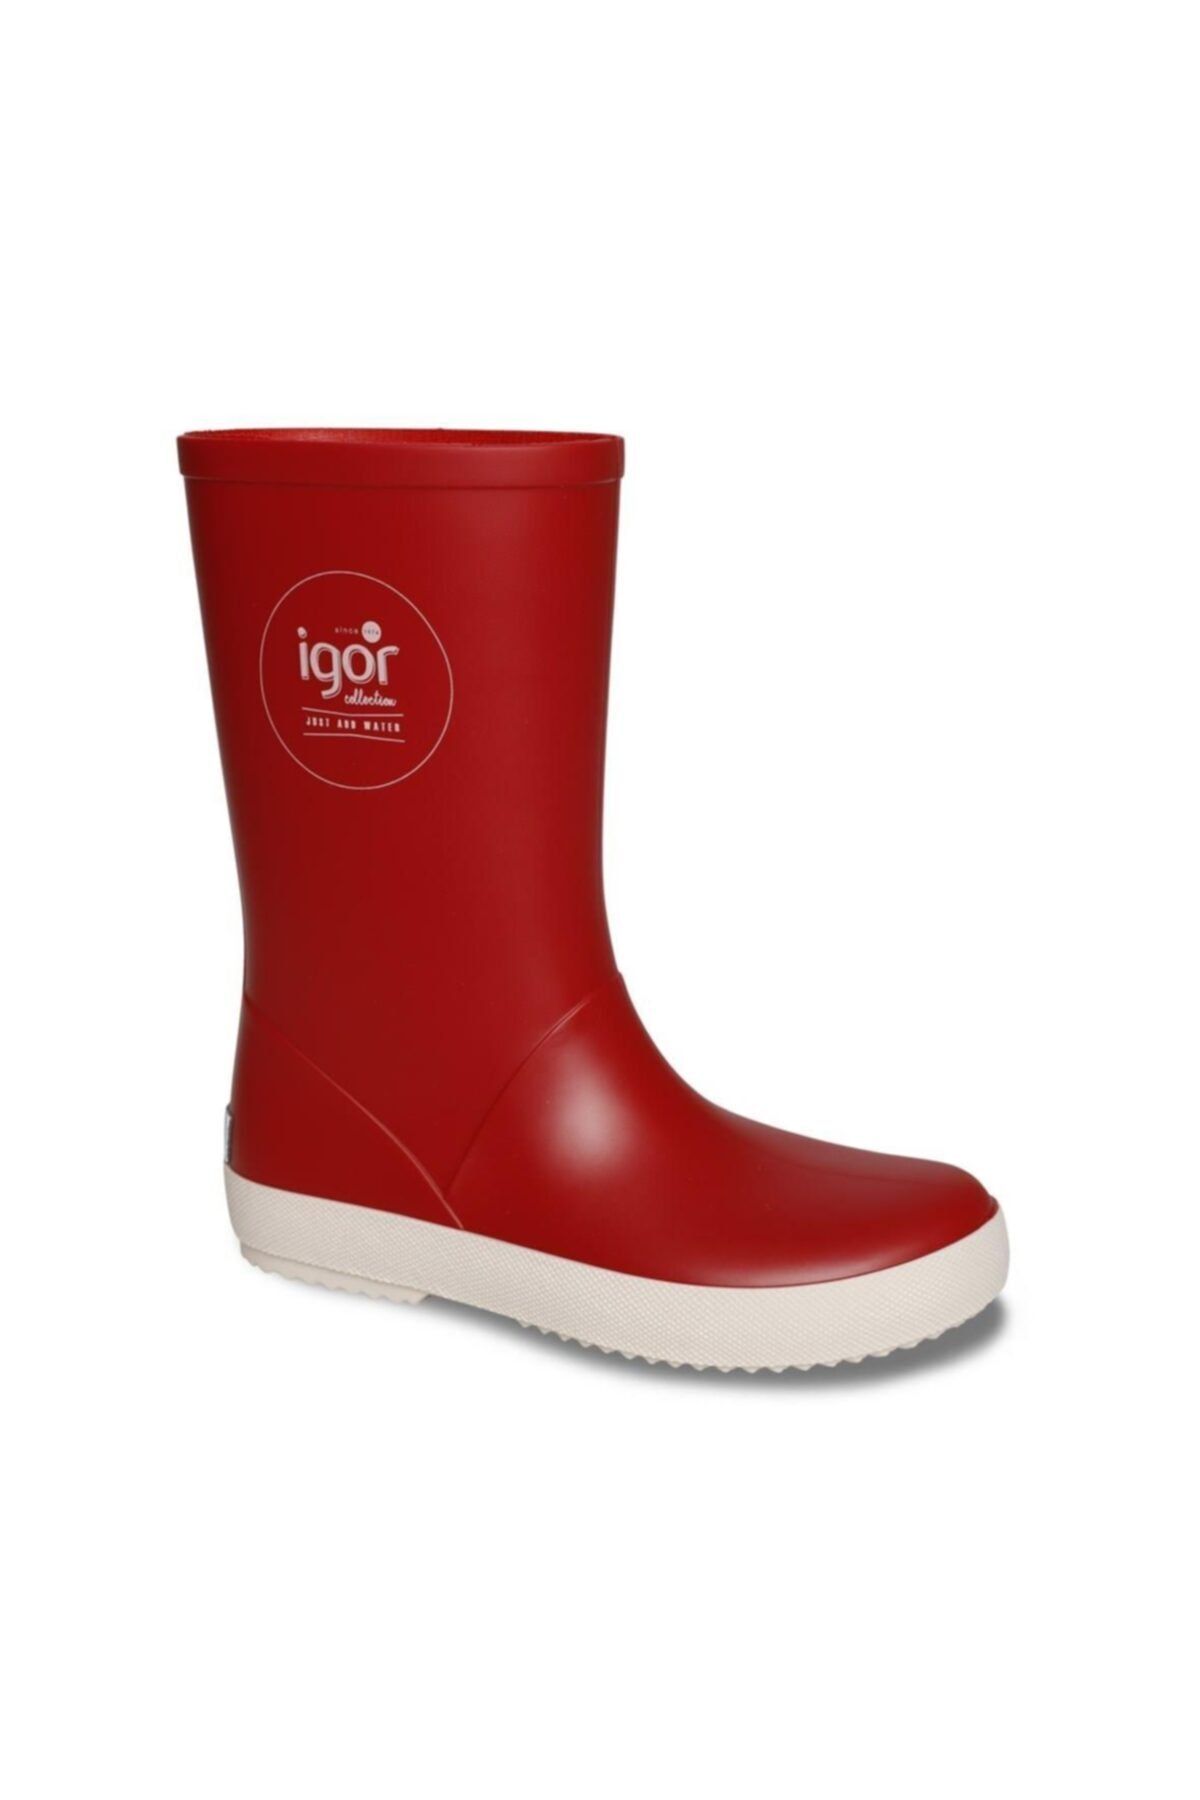 IGOR Splash Nautico Çocuk Yağmur Çizmesi - Kırmızı